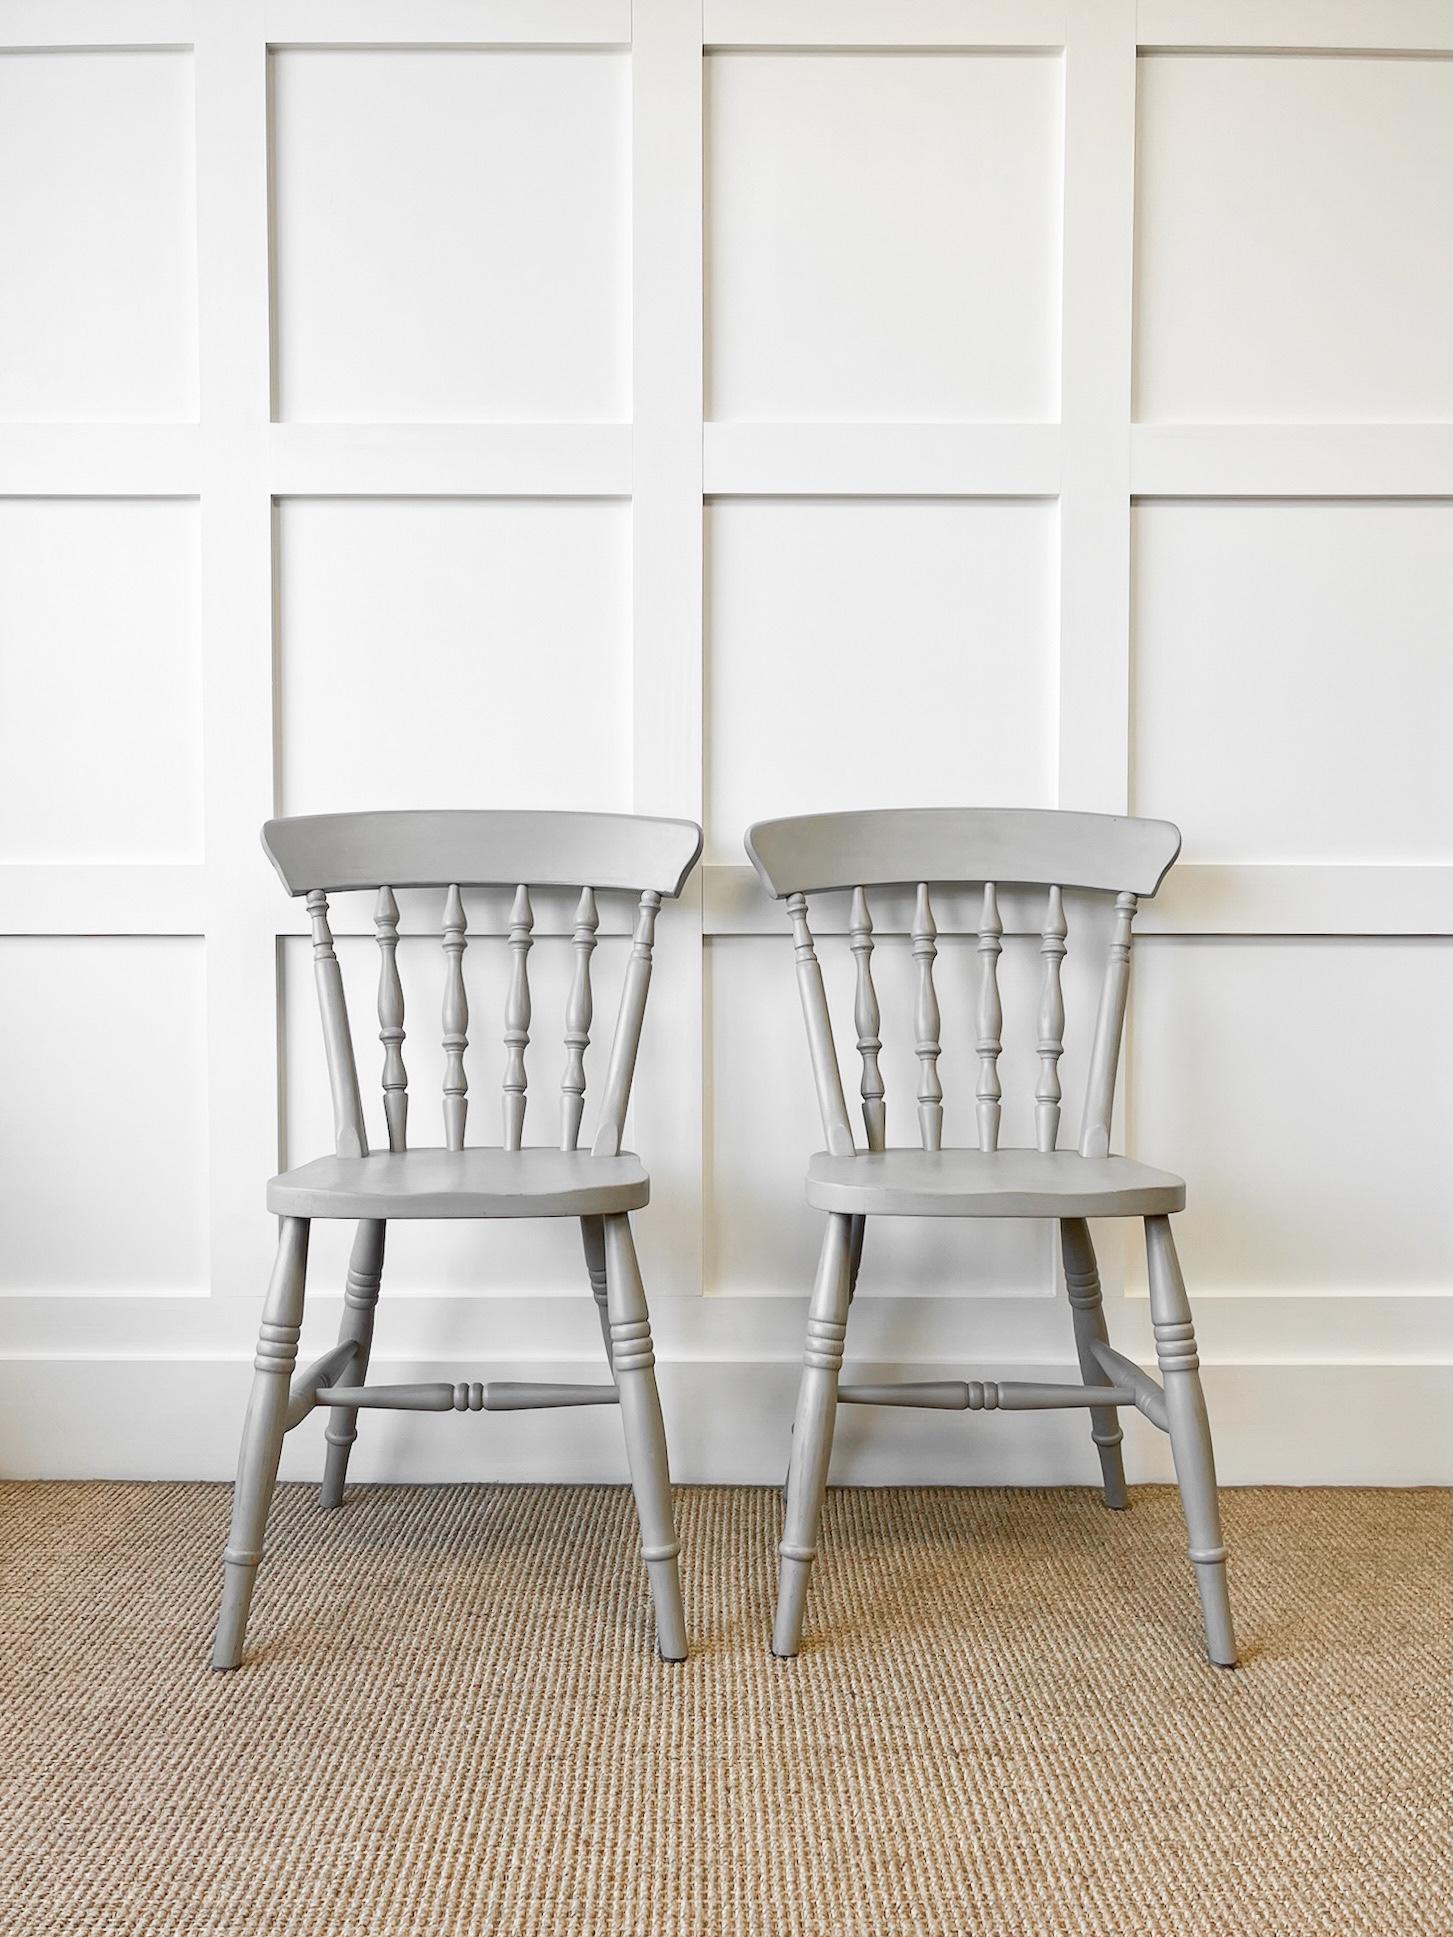 Ein gutes Paar von Vintage Esche Spindel zurück Seite Stühle. Es ist französisch grau gestrichen und sehr solide nach traditioneller Art gebaut.  Hübsche Profile und gut und schwer.  Perfekt für einen Bauernhoftisch! Fest im Gelenk. Dies sind keine